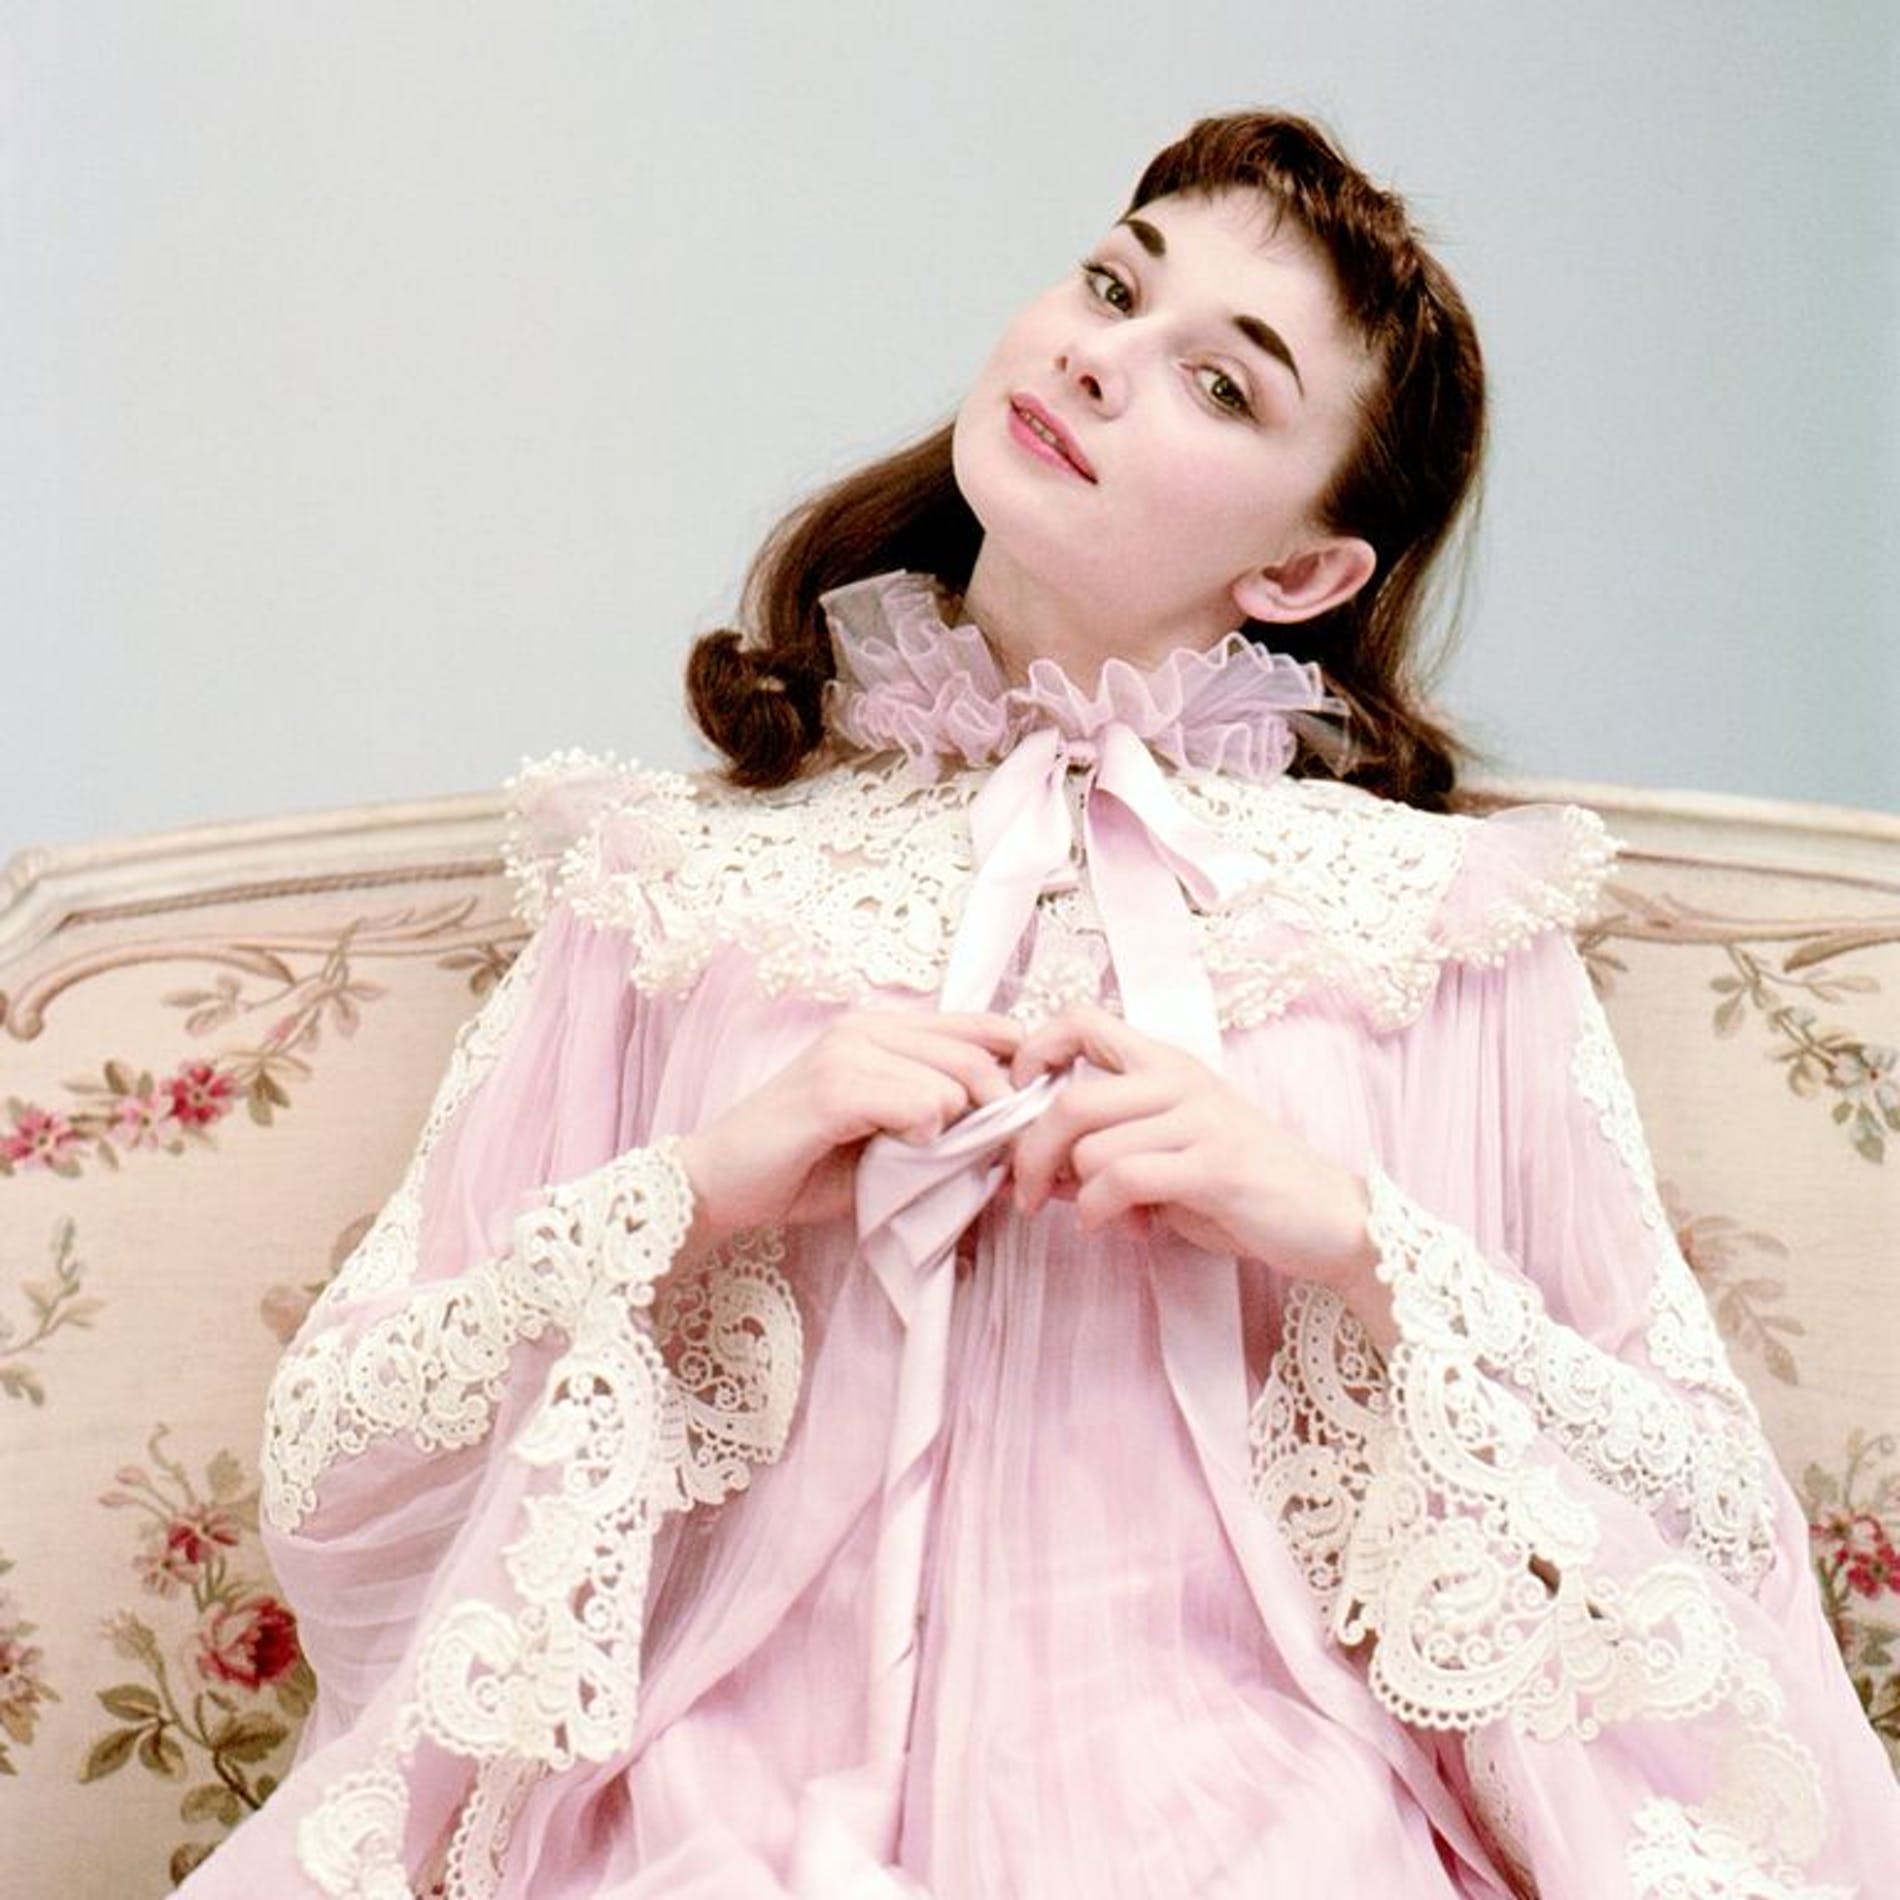  Livro revela imagens inéditas de Audrey Hepburn 